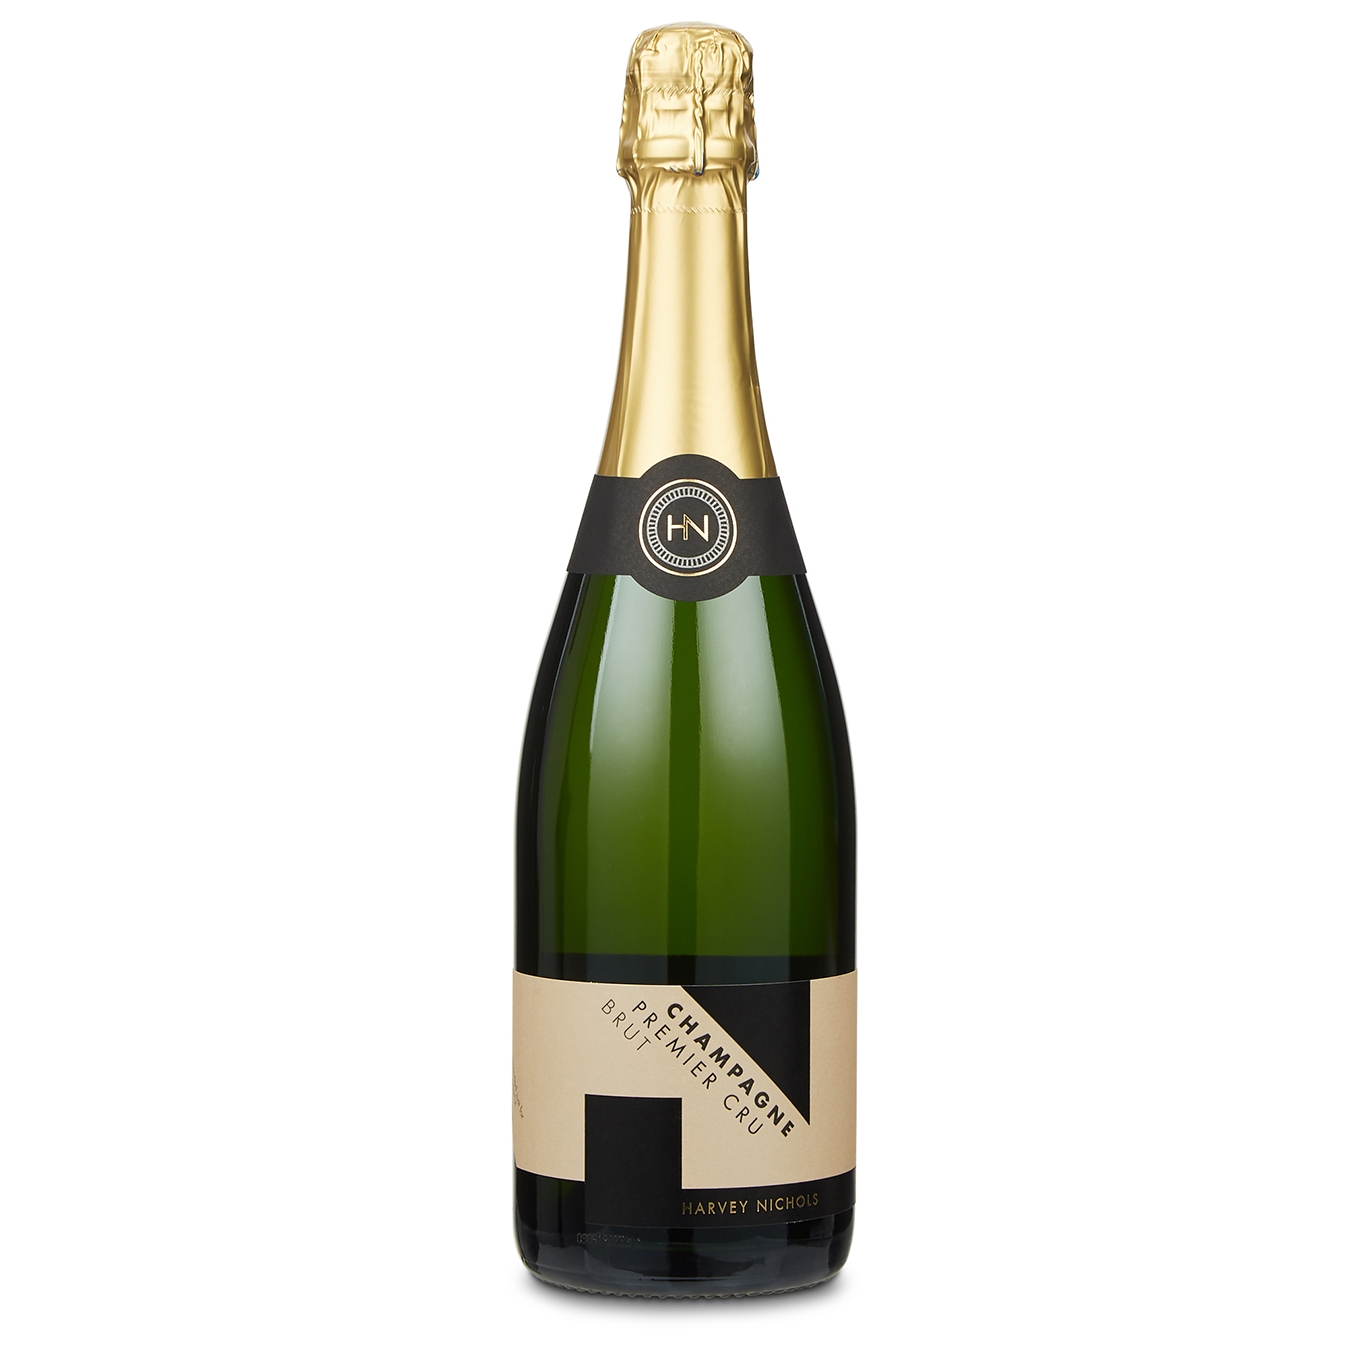 Harvey Nichols Premier Cru Brut, Champagne NV, Beverages Sparkling Wine